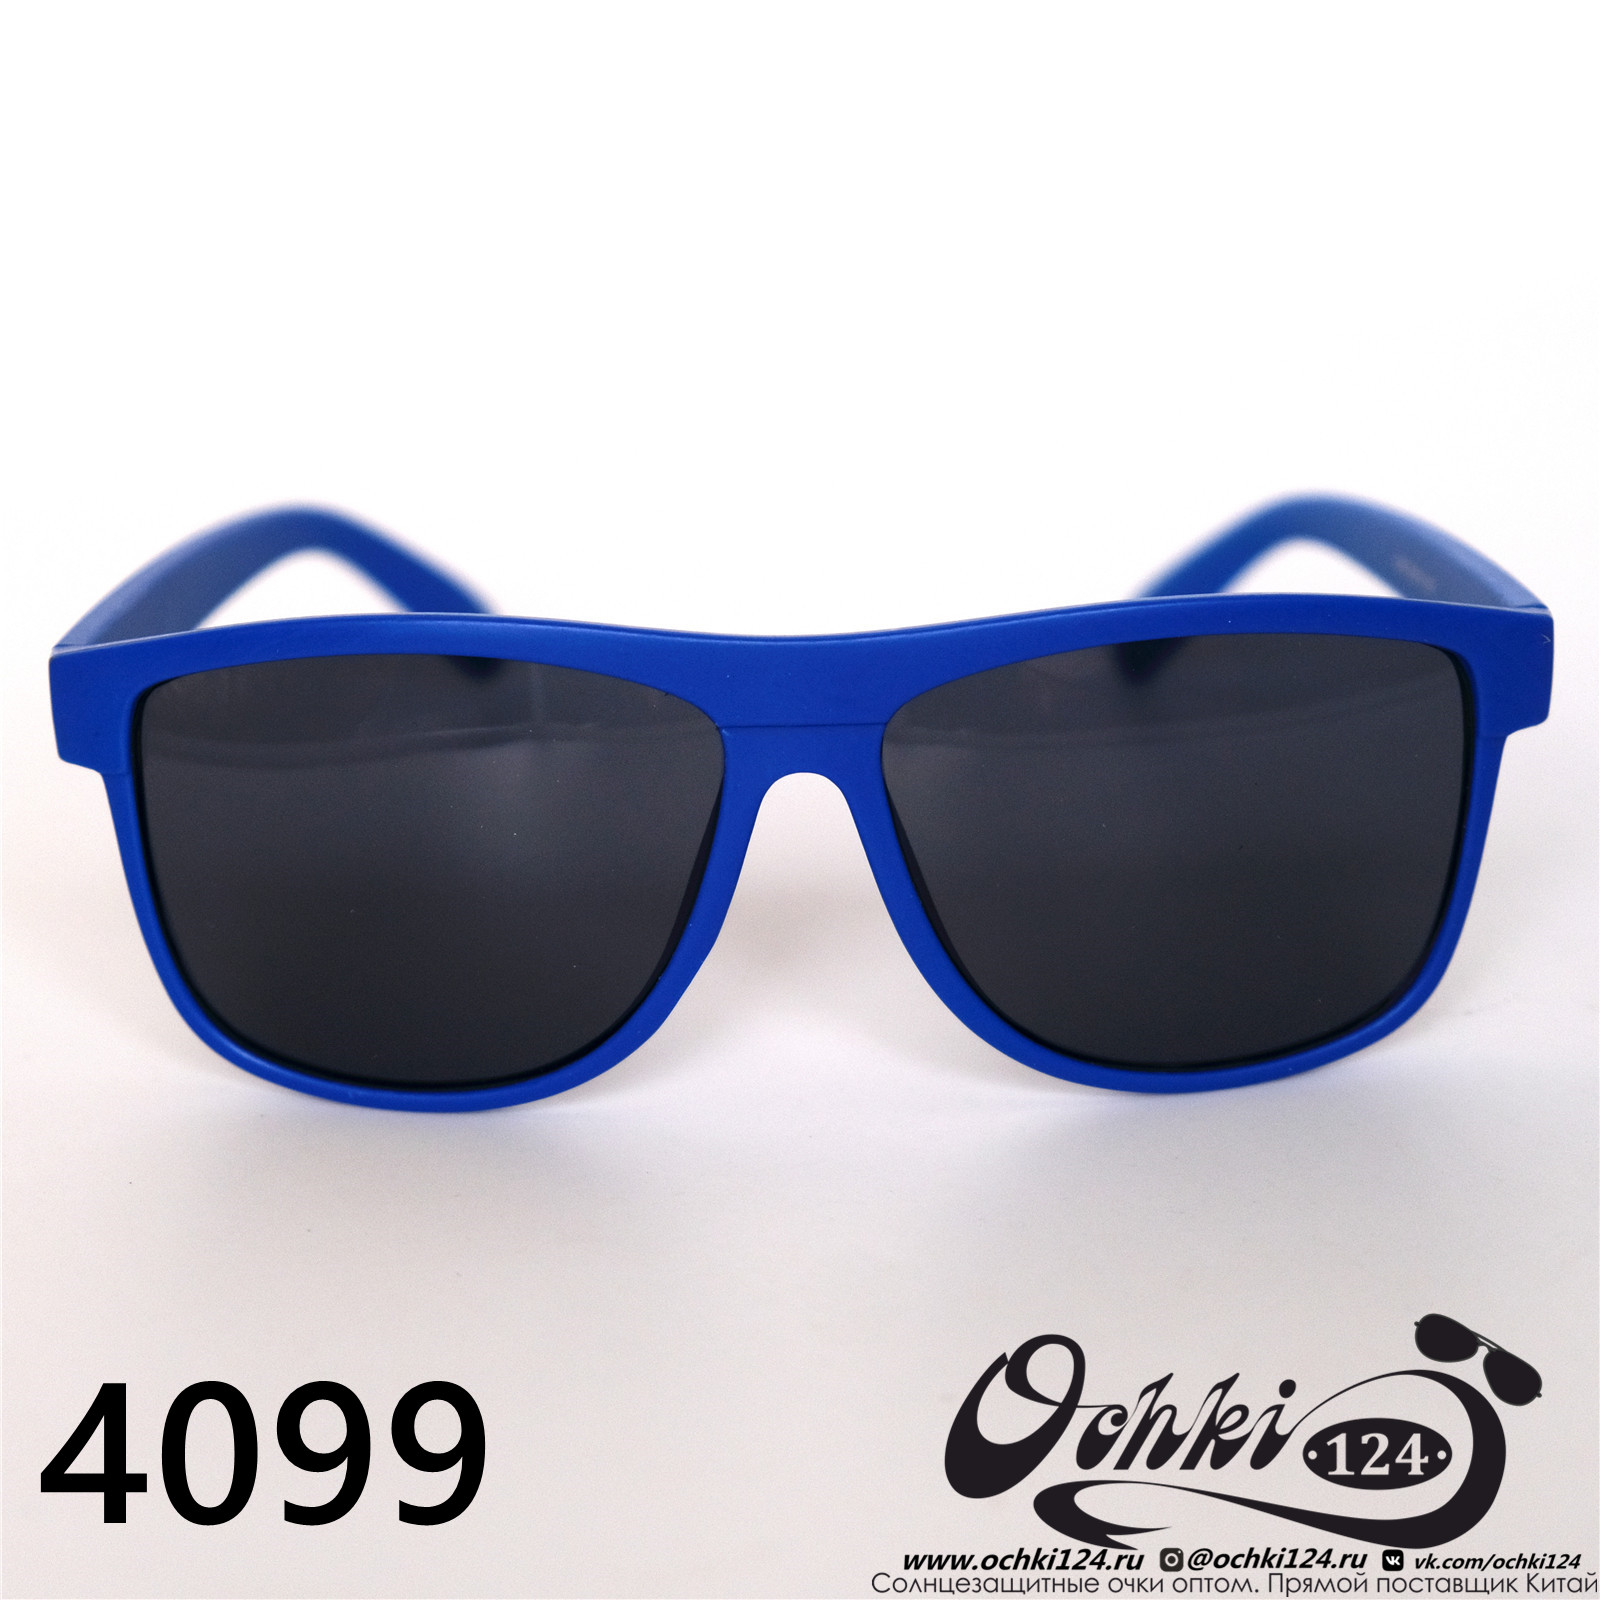  Солнцезащитные очки картинка 2022 Мужские Стандартные Materice 4099-5 